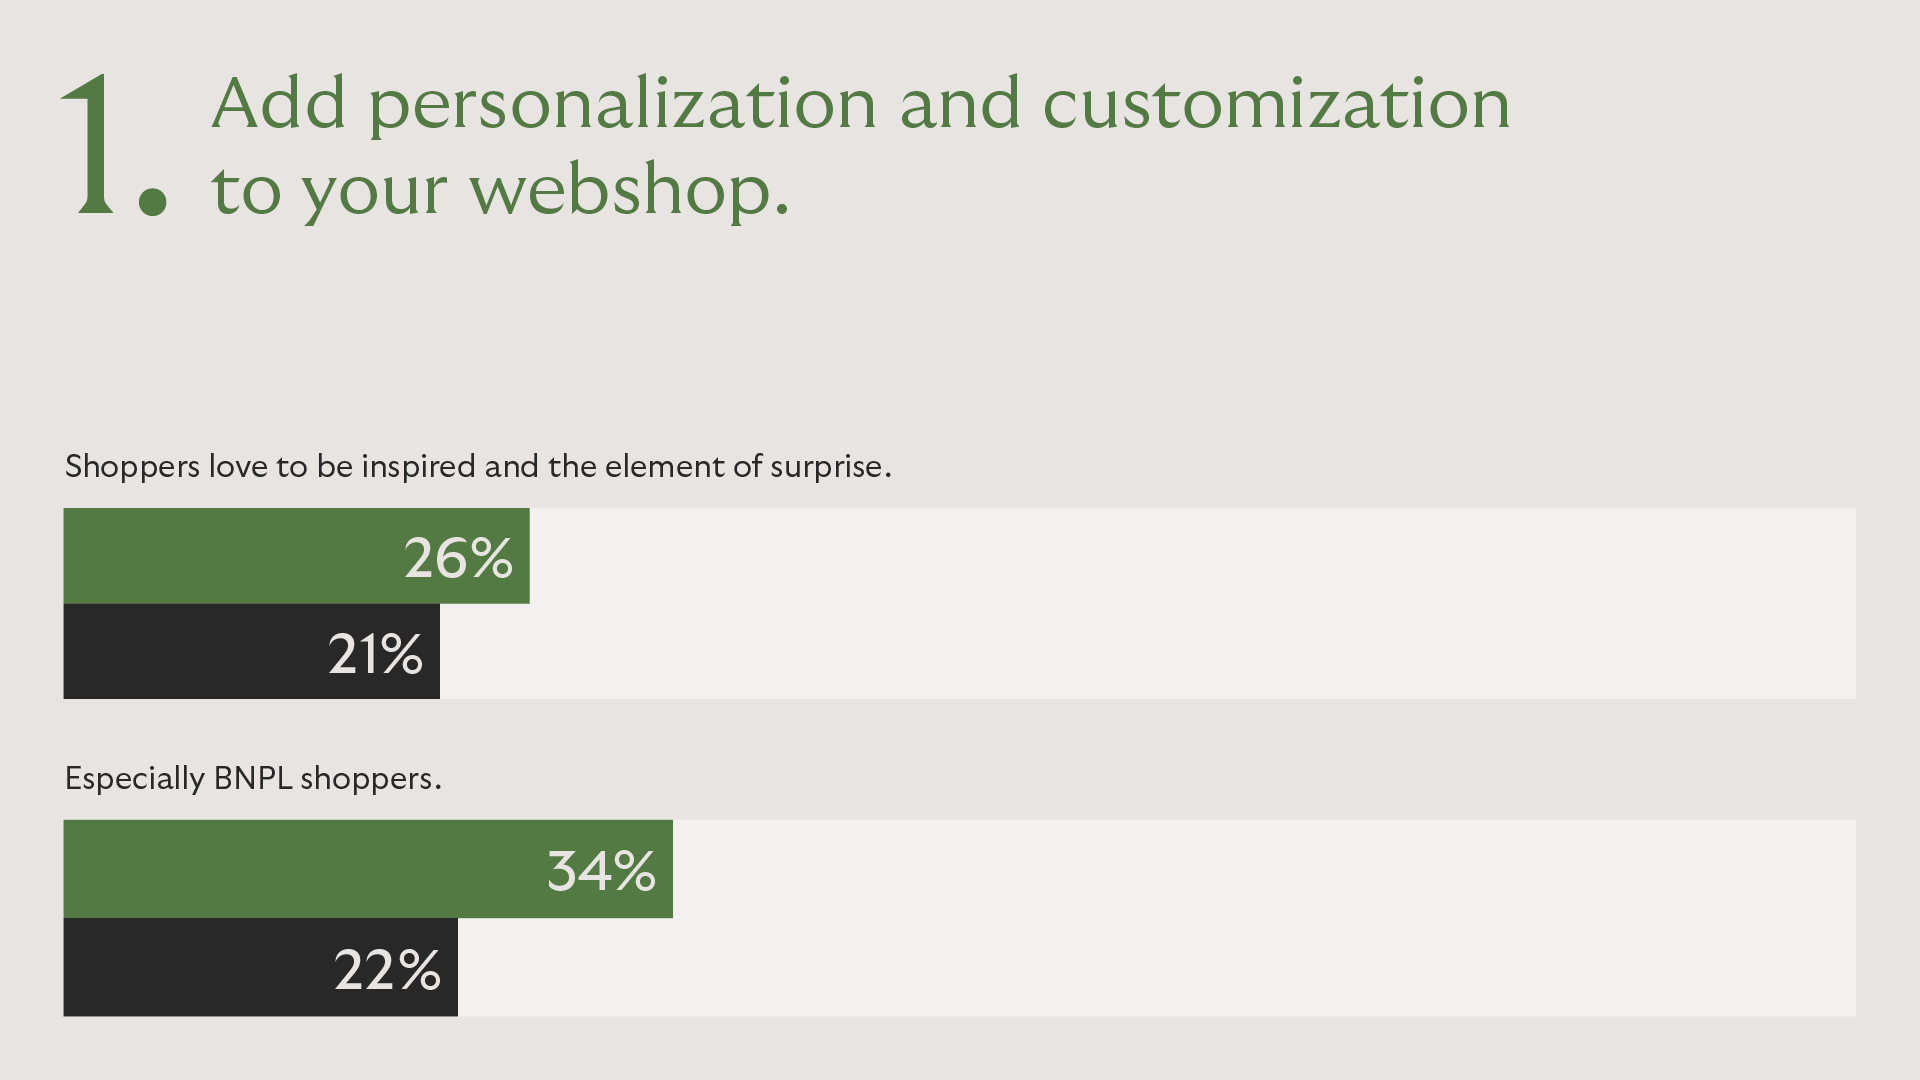 7. Personalization and Customization